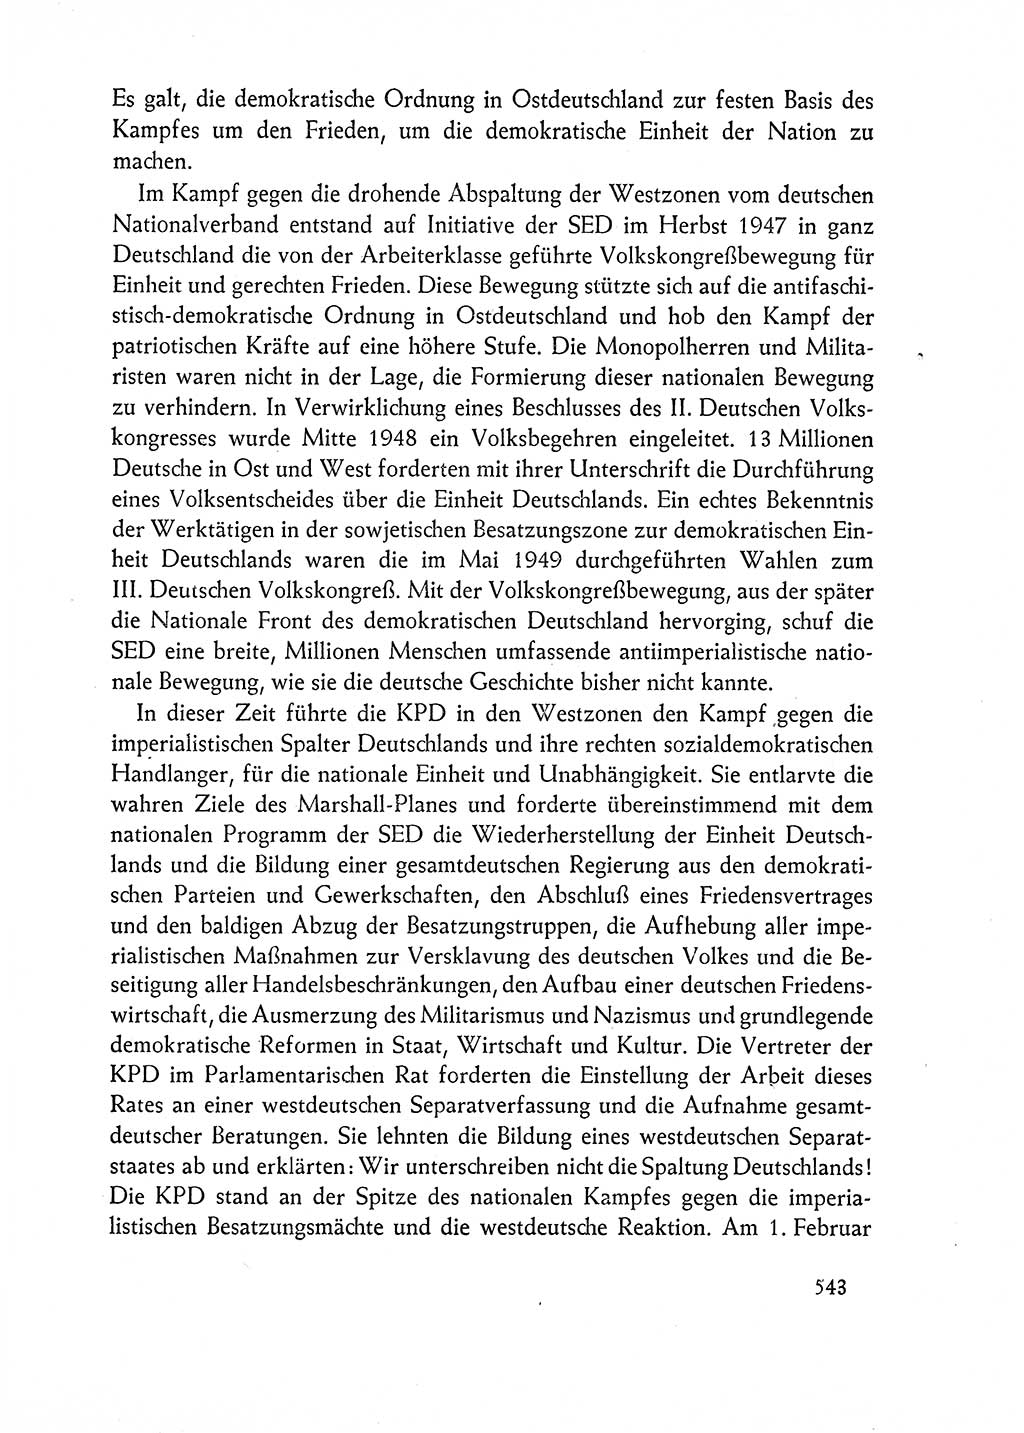 Dokumente der Sozialistischen Einheitspartei Deutschlands (SED) [Deutsche Demokratische Republik (DDR)] 1962-1963, Seite 543 (Dok. SED DDR 1962-1963, S. 543)